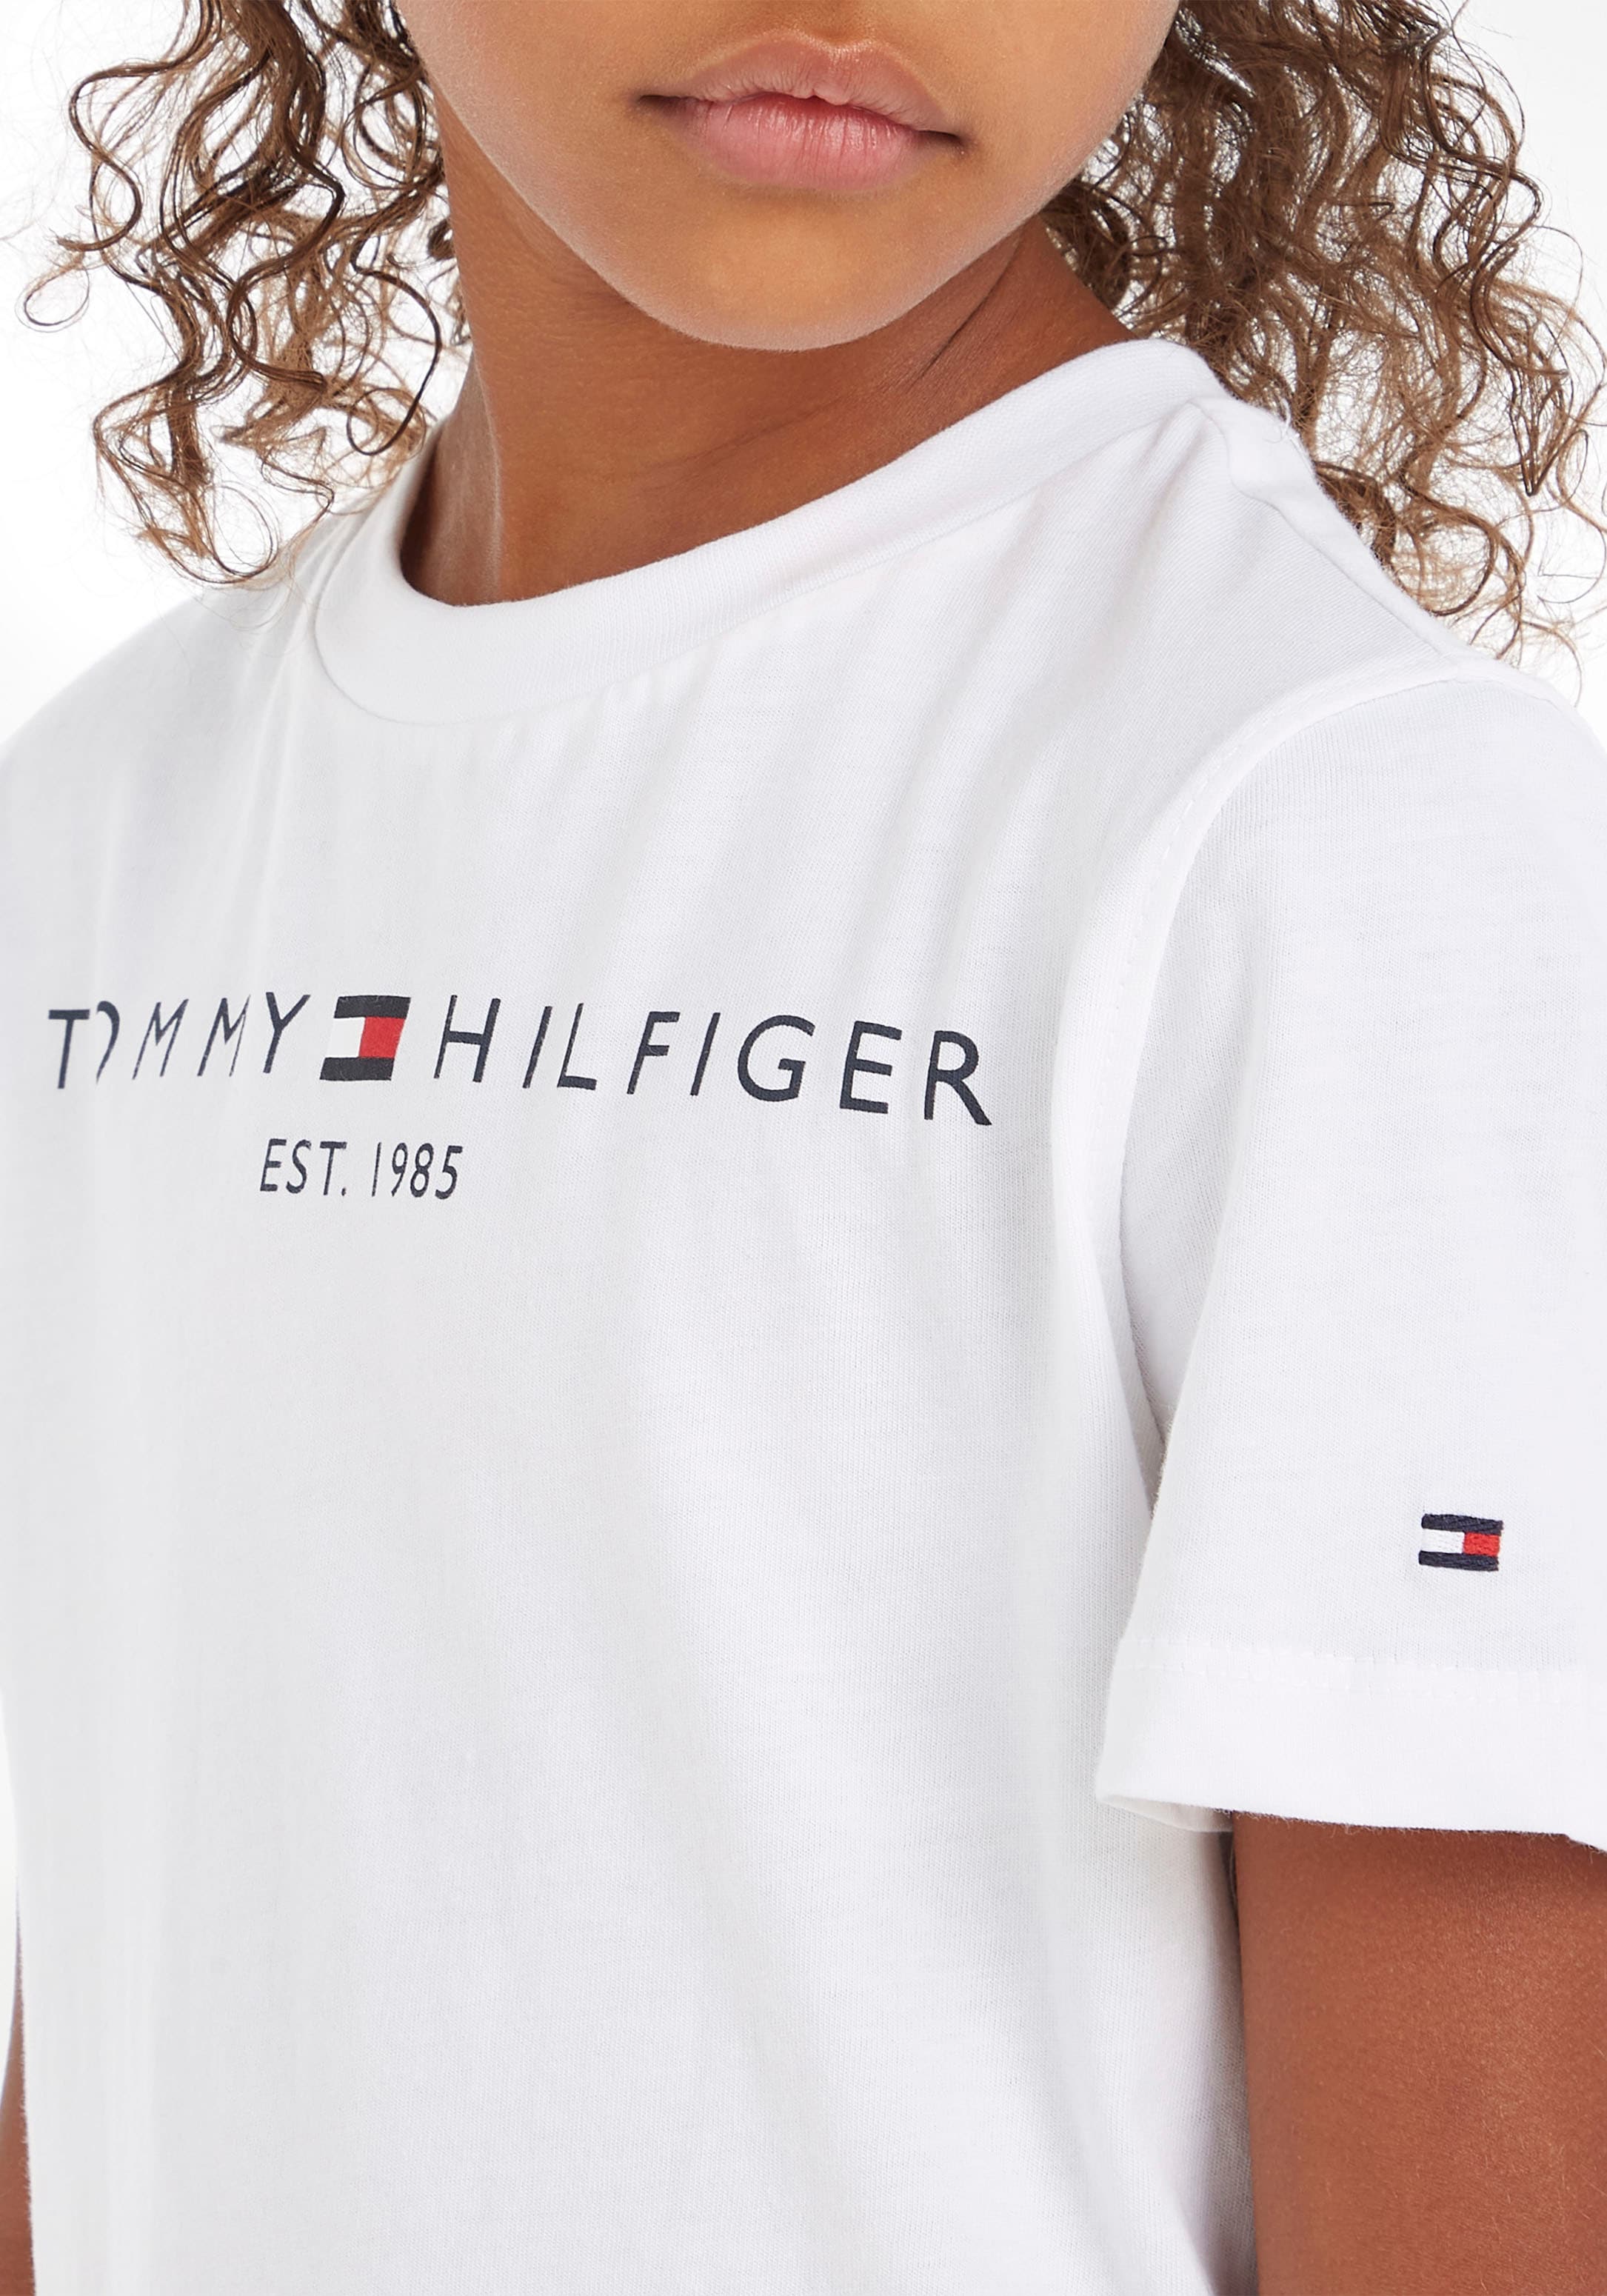 Trendige Tommy Hilfiger T-Shirt »ESSENTIAL TEE«, Kinder Kids Junior MiniMe,für  Jungen und Mädchen versandkostenfrei shoppen